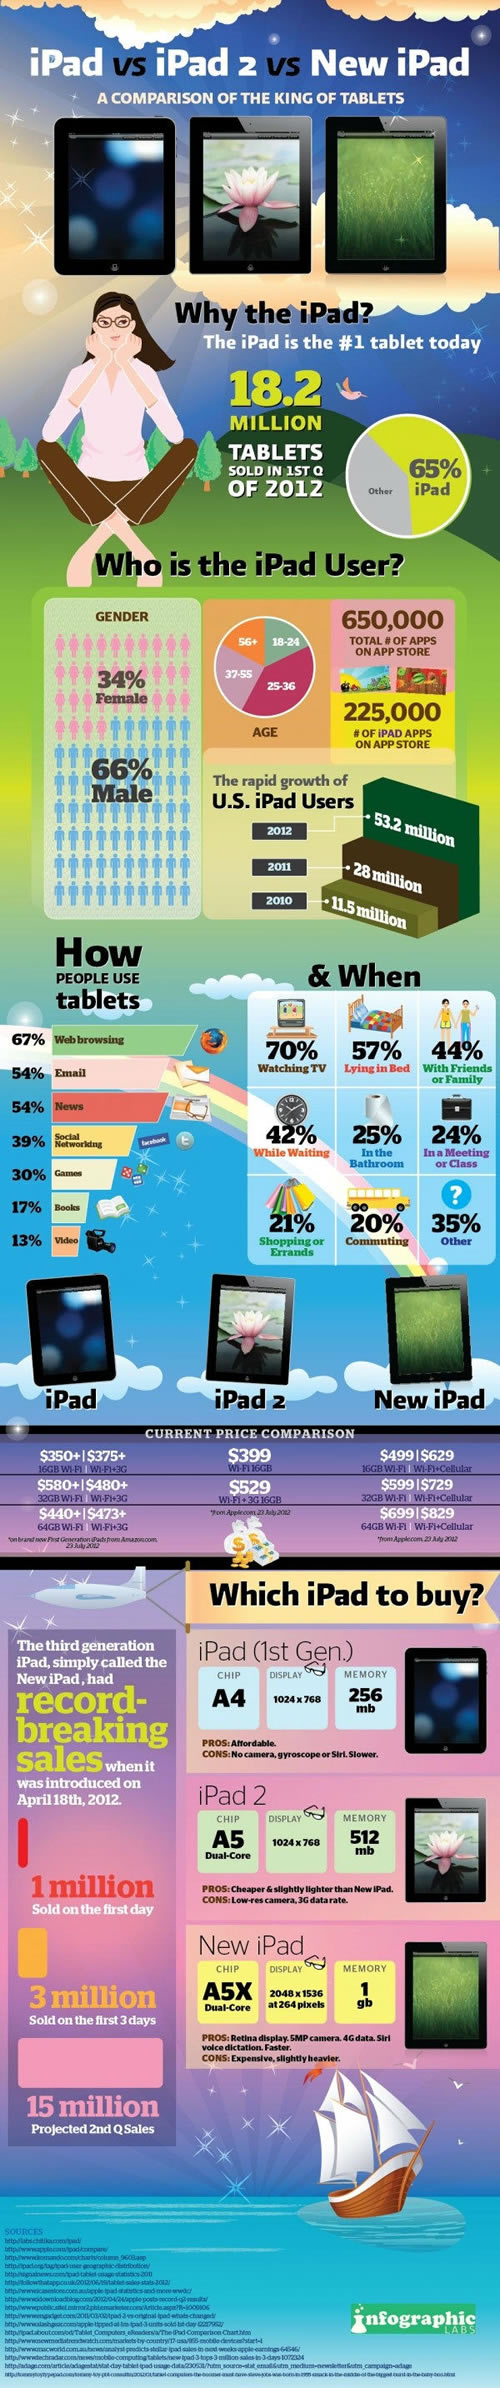 Como-utilizamos-el-iPad-2012-08-29-15-09.jpg